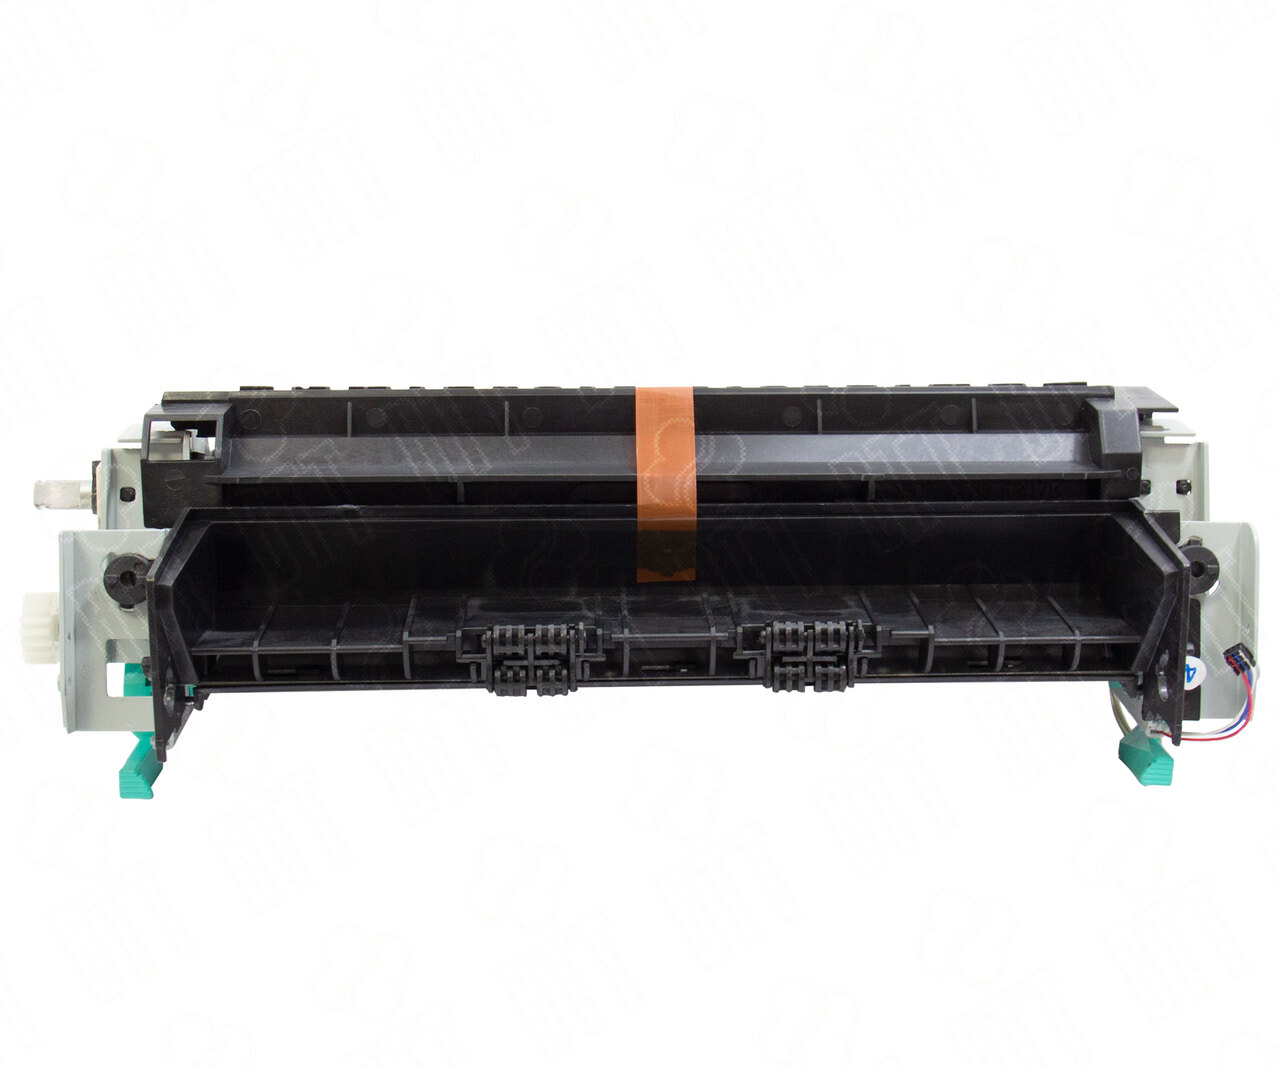 Термоузел (Печь) в сборе Hi-Black для HP LJ P2015/ P2014/M2727